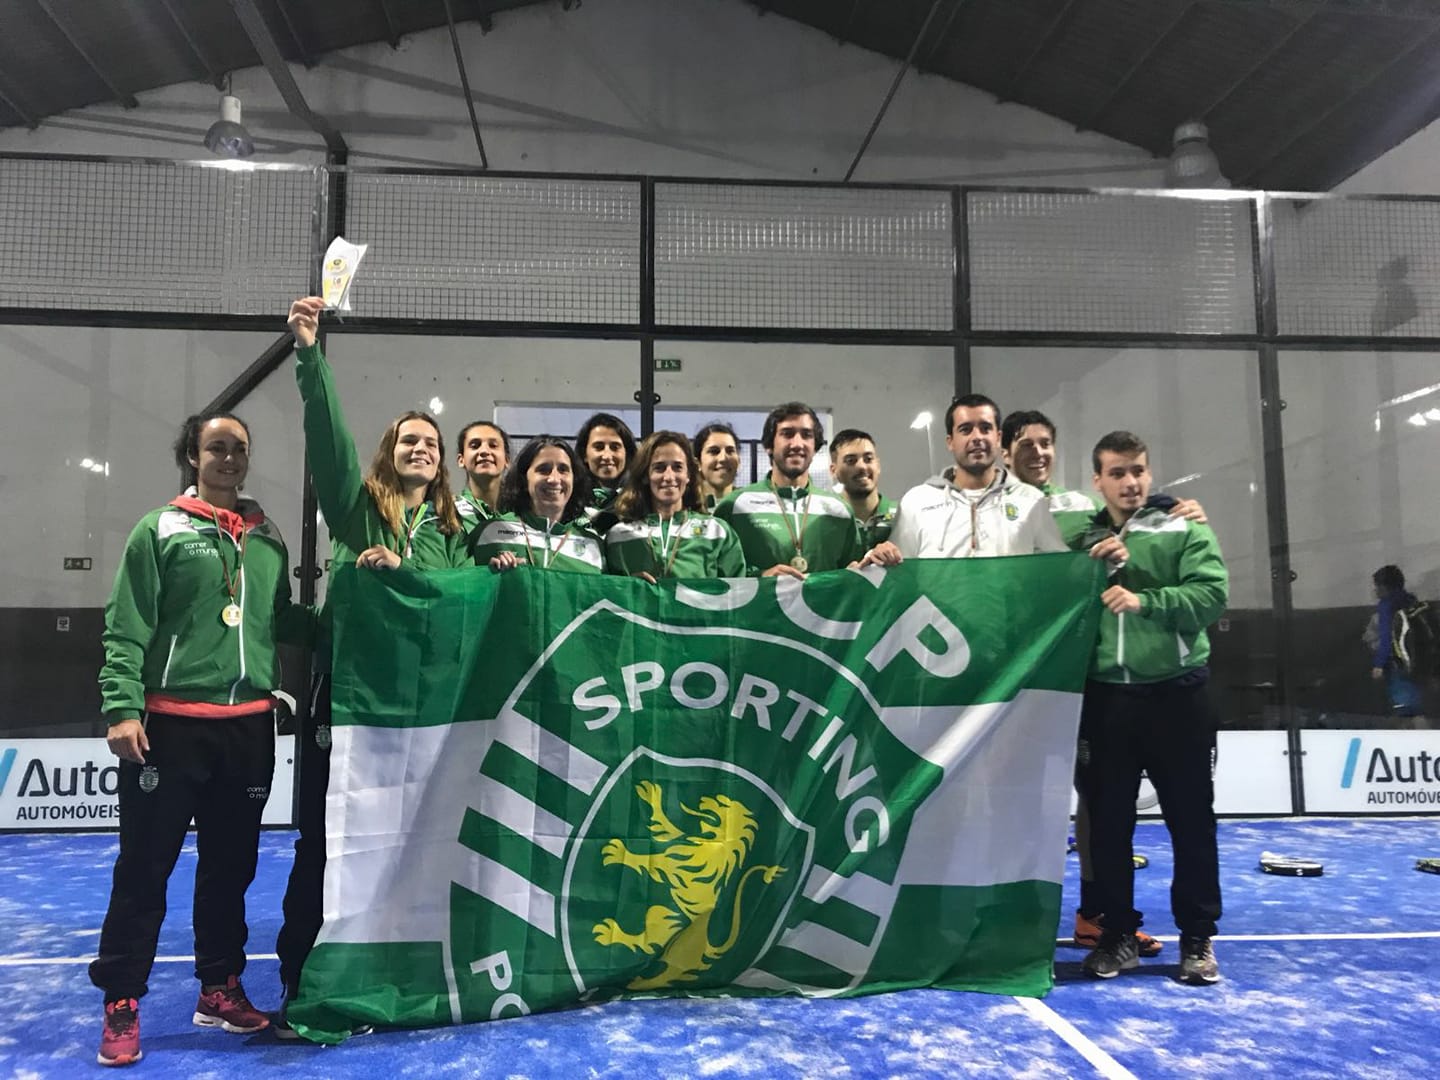 Sporting Clube de Portugal conquista o Campeonato Nacional de Padel por Equipas 2017